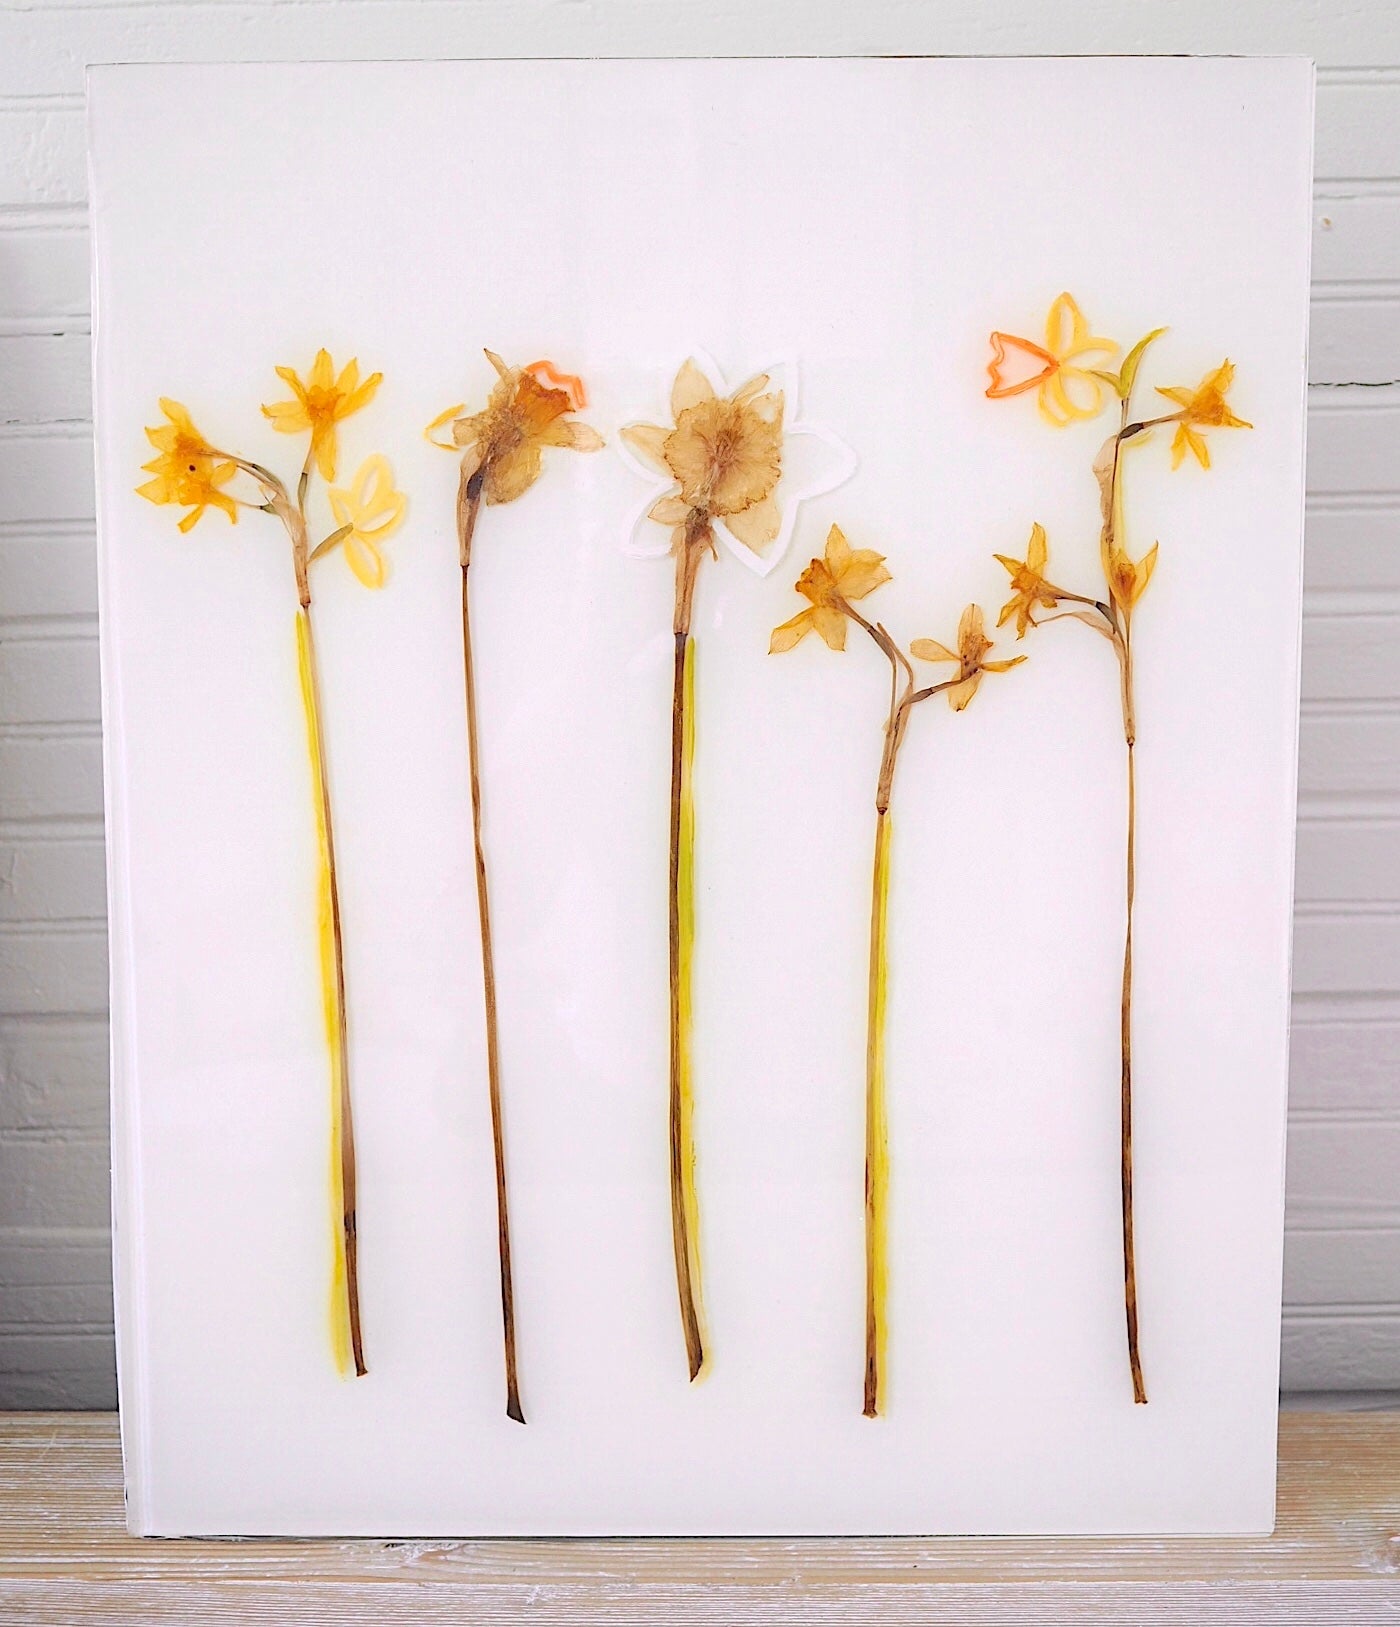 Daffodil Study II